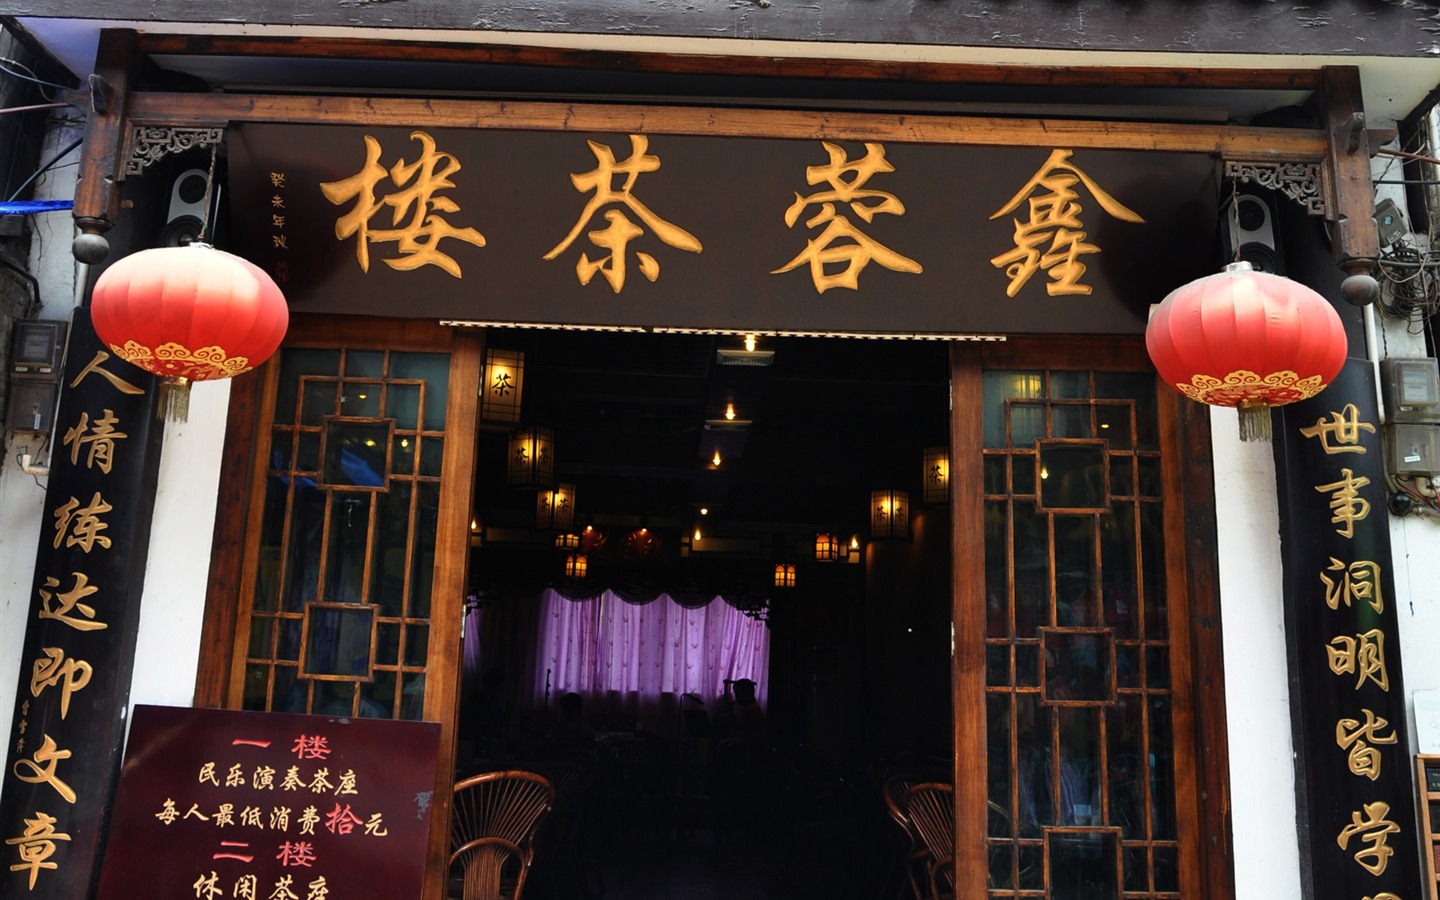 Chongqing Travel (Old Hong OK Werke) #14 - 1440x900